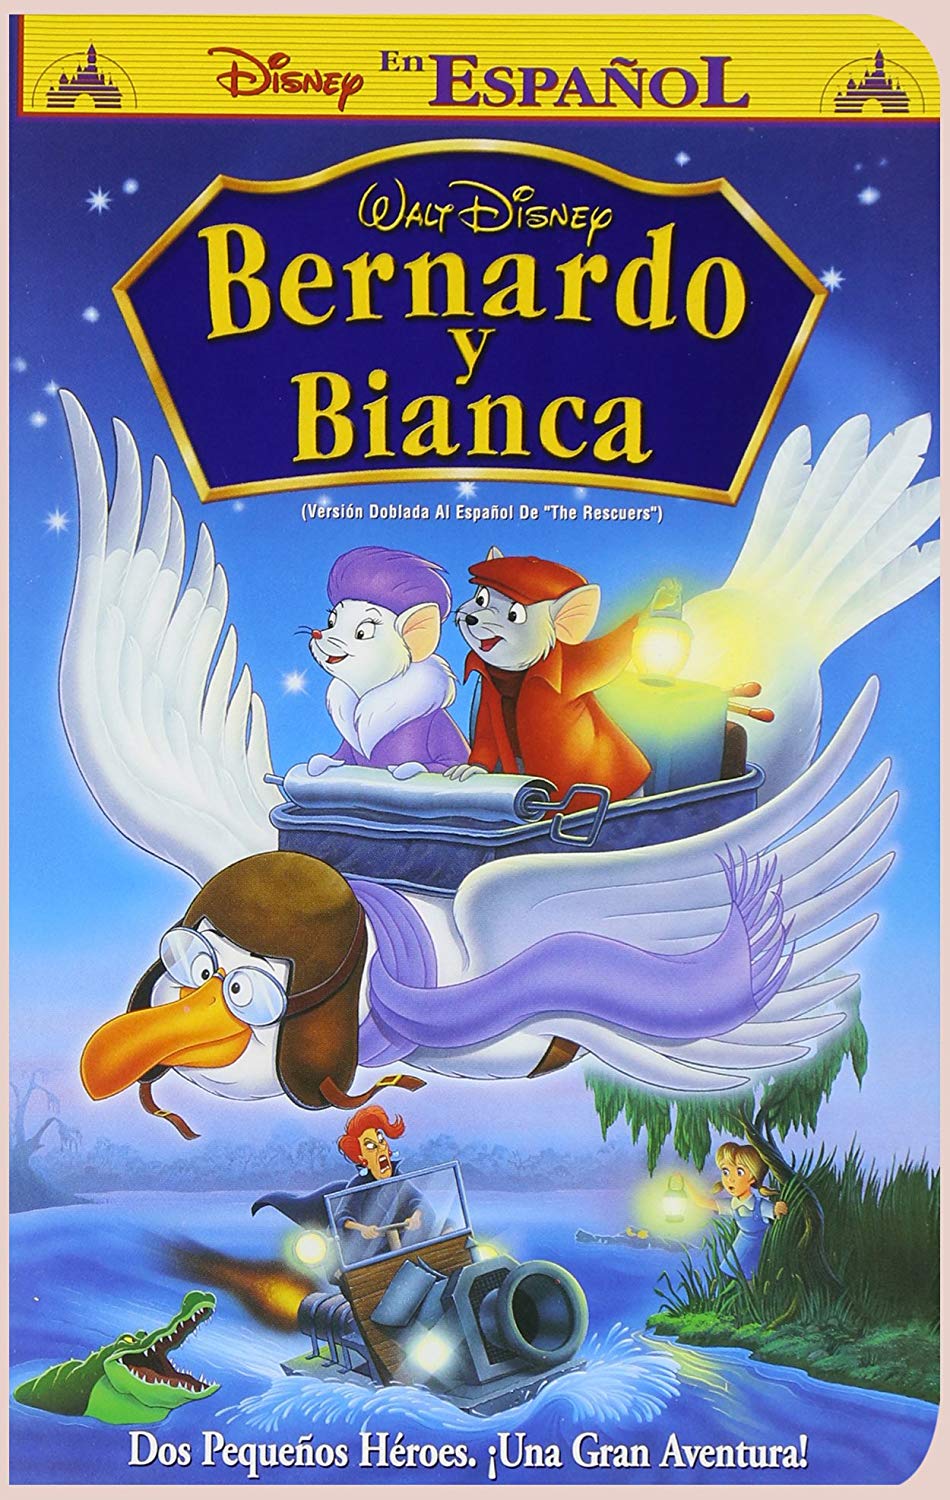 Bernardo & Bianca DSNP 720p WEB-DL LjxV4Nvq_o